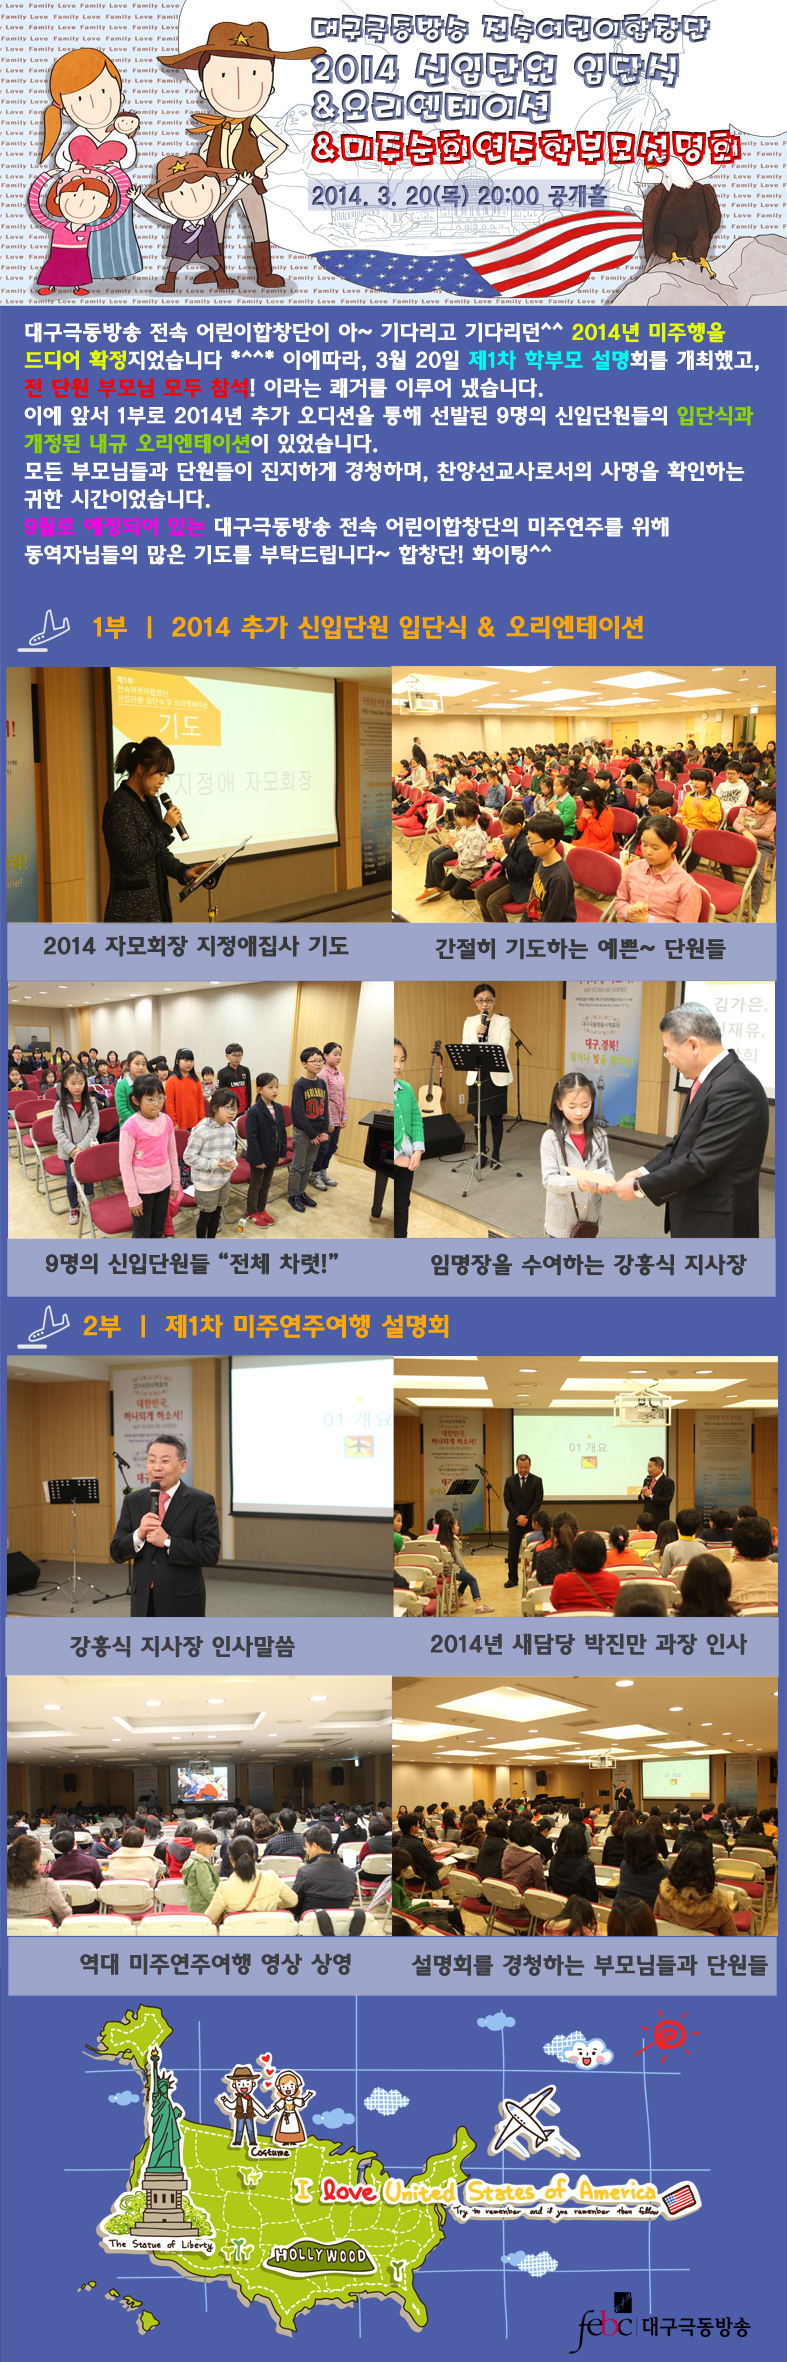 20140320(목) 전속어린이합창단 미주순회연주 설명회(홈페이지 게시용).jpg